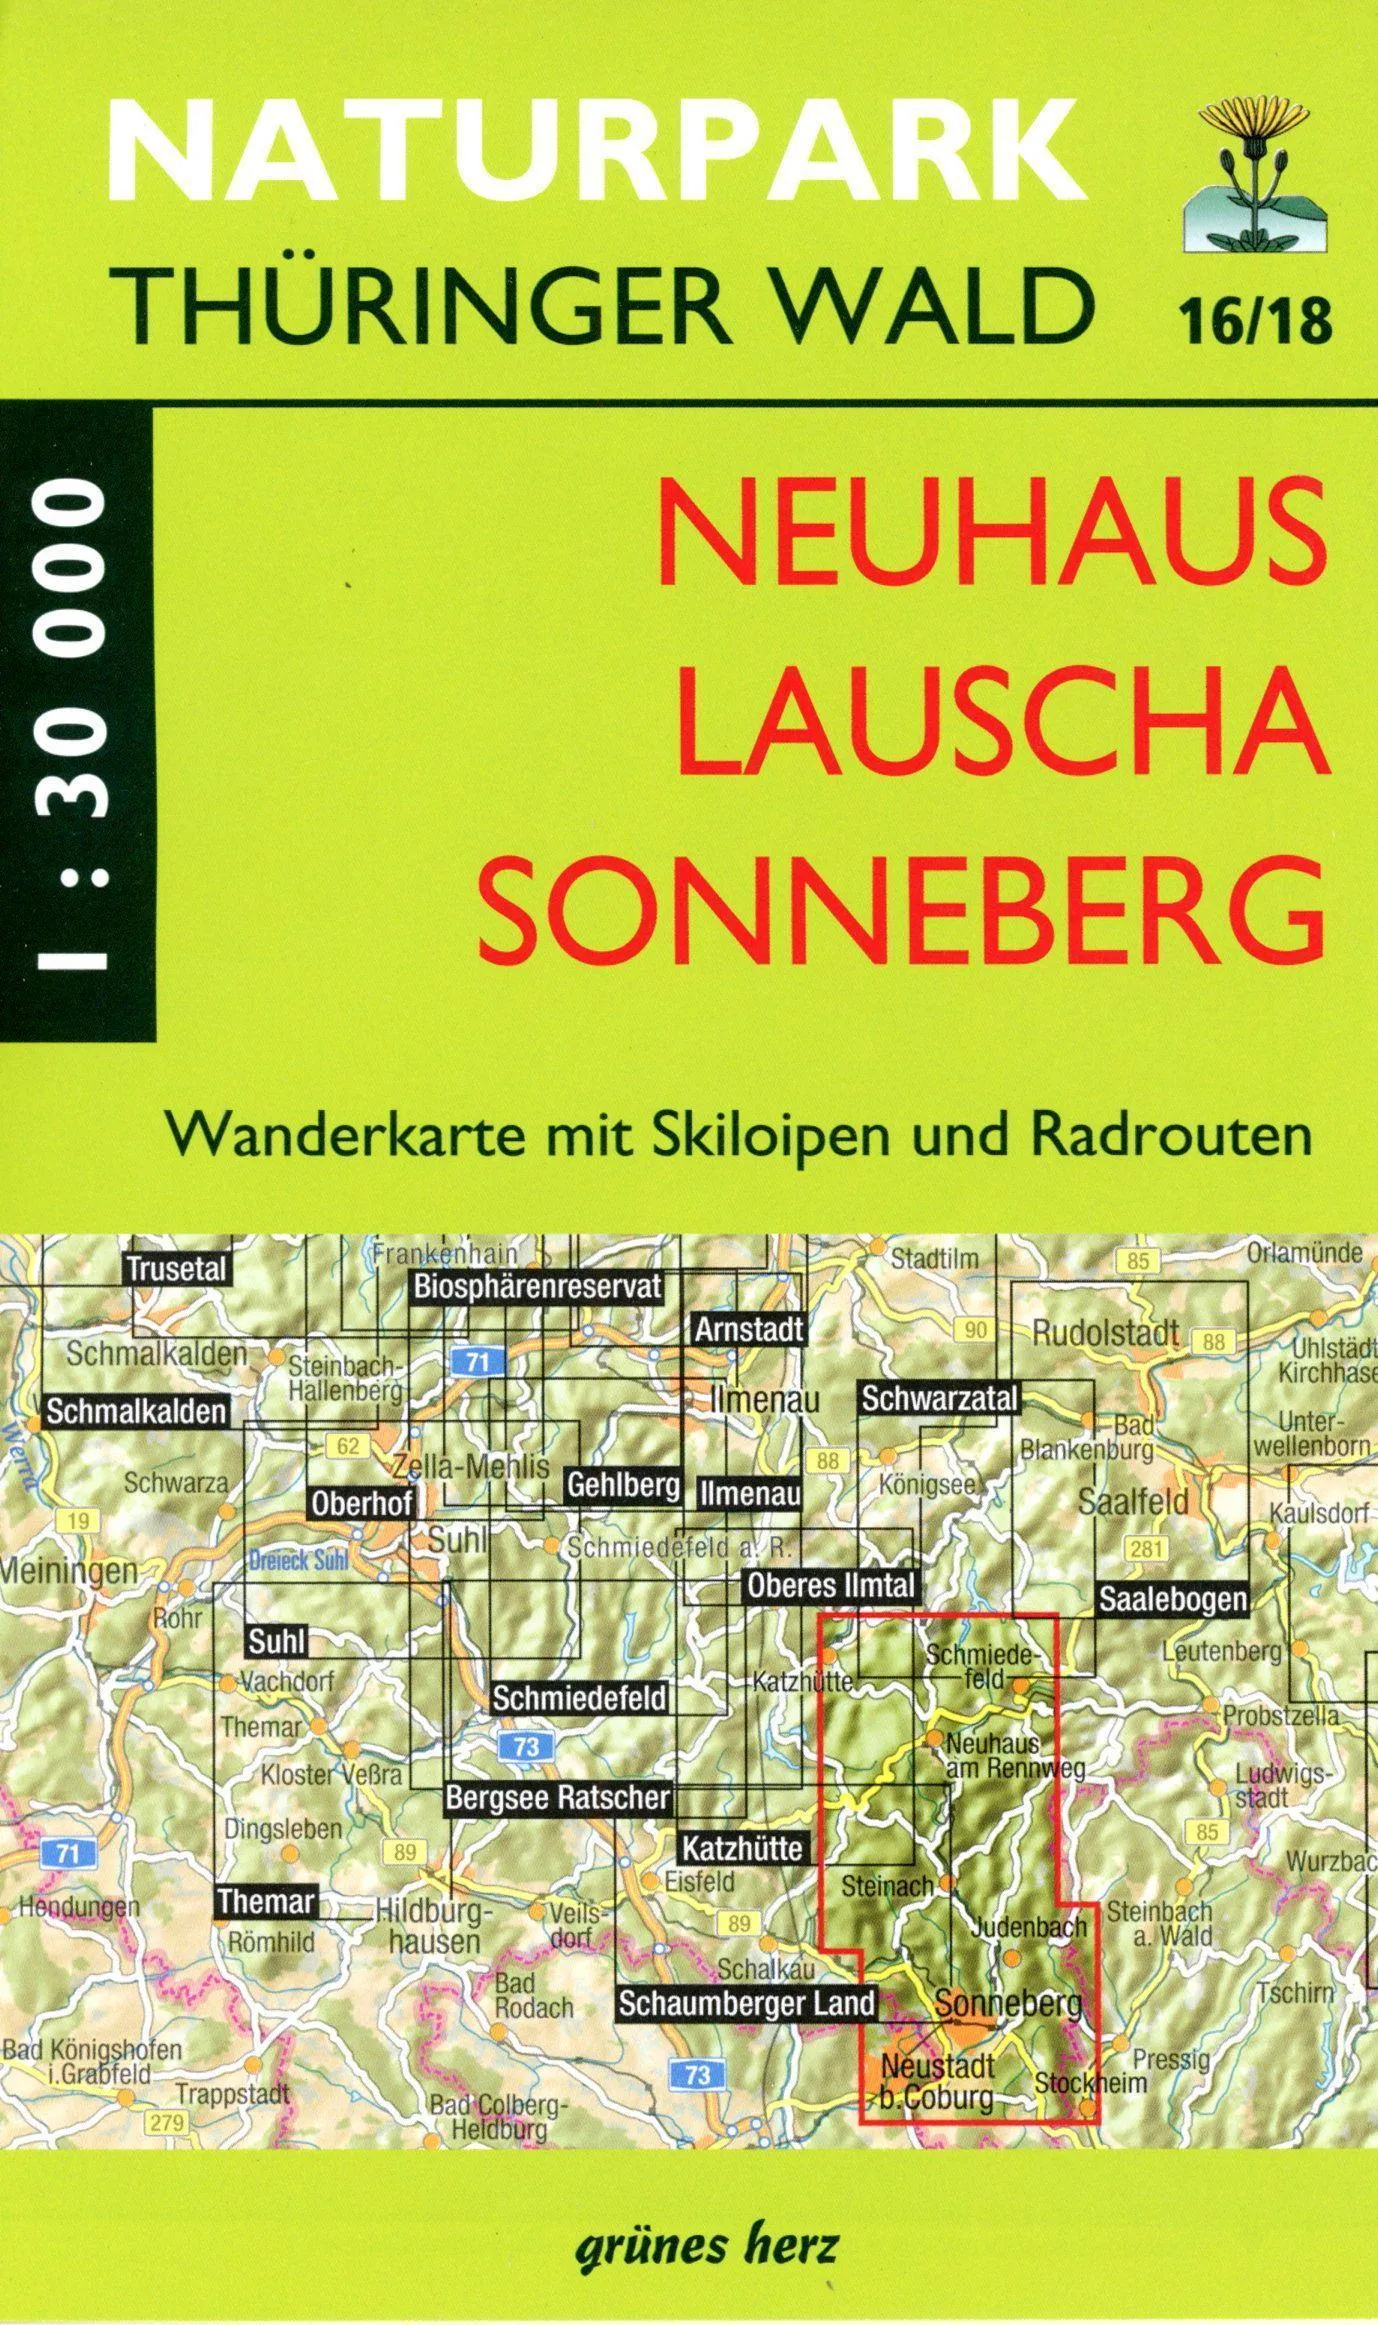 Wk 16/18 Neuhaus-Lauscha-Sonneberg  Karte (im Sinne von Landkarte)